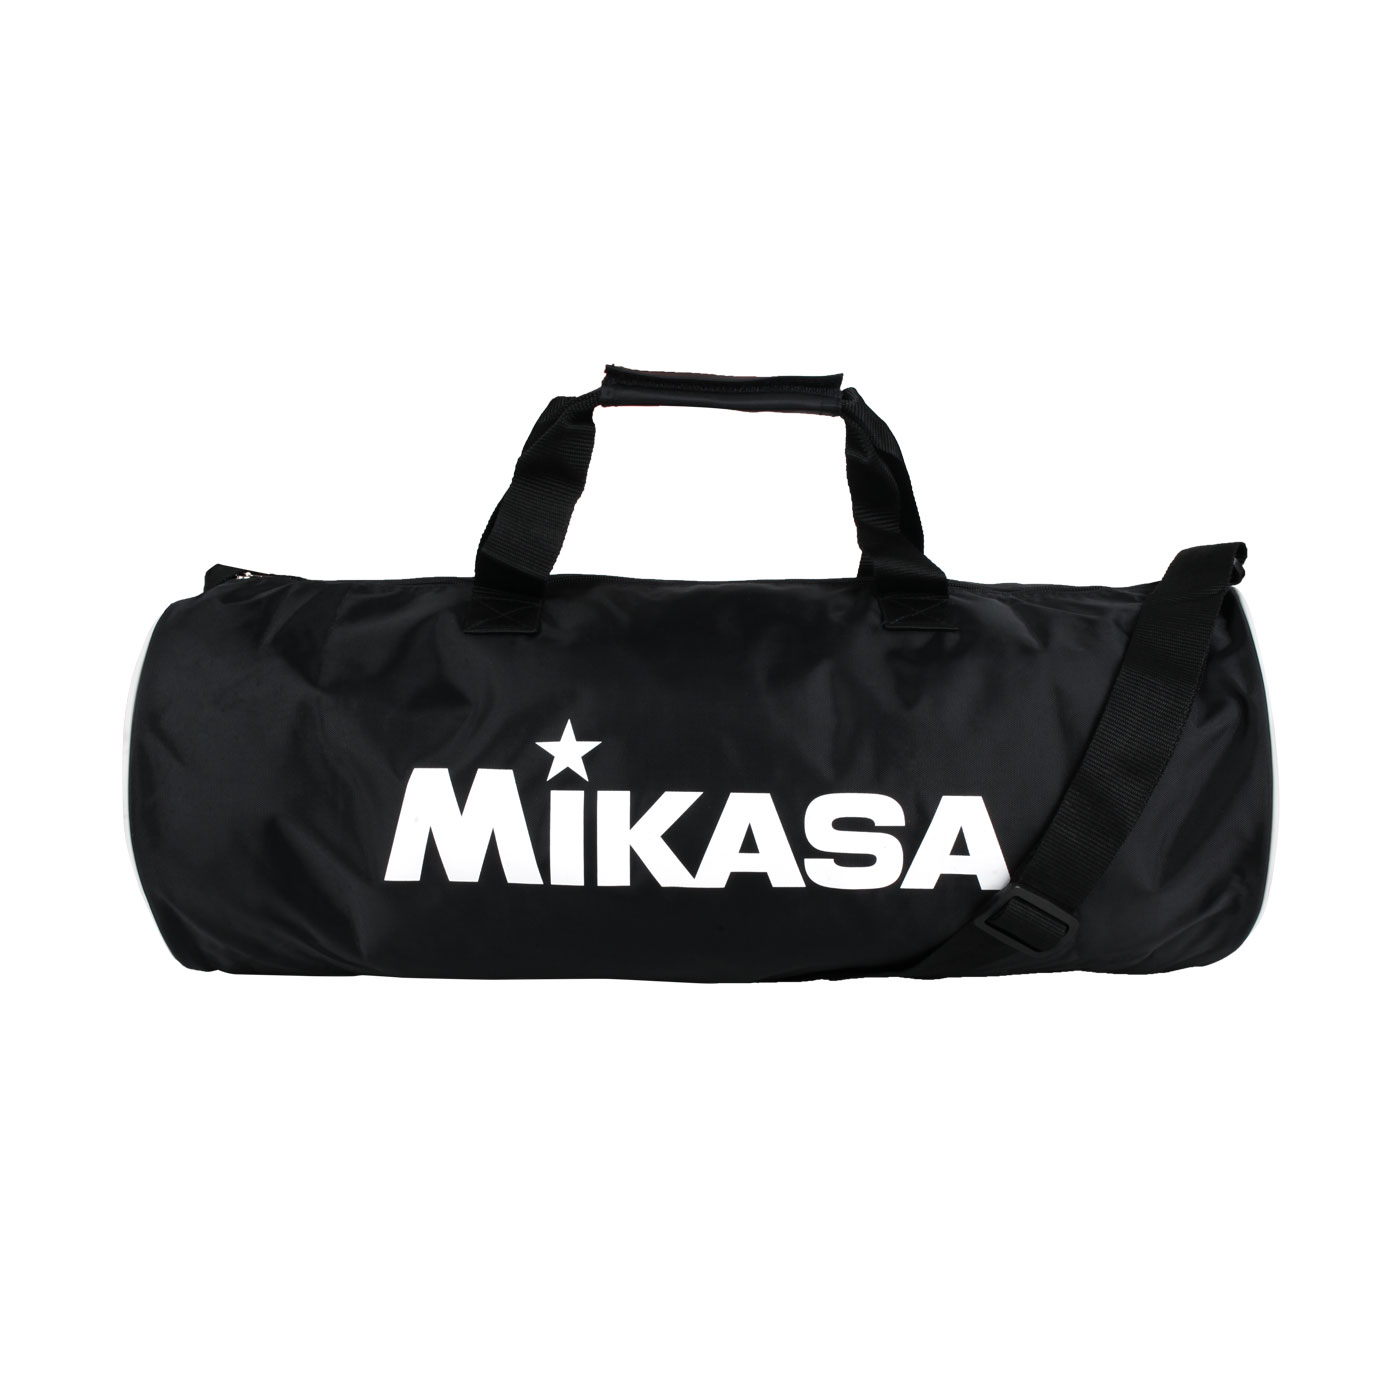 MIKASA 排球袋(3顆裝) MKB226513 - 黑白